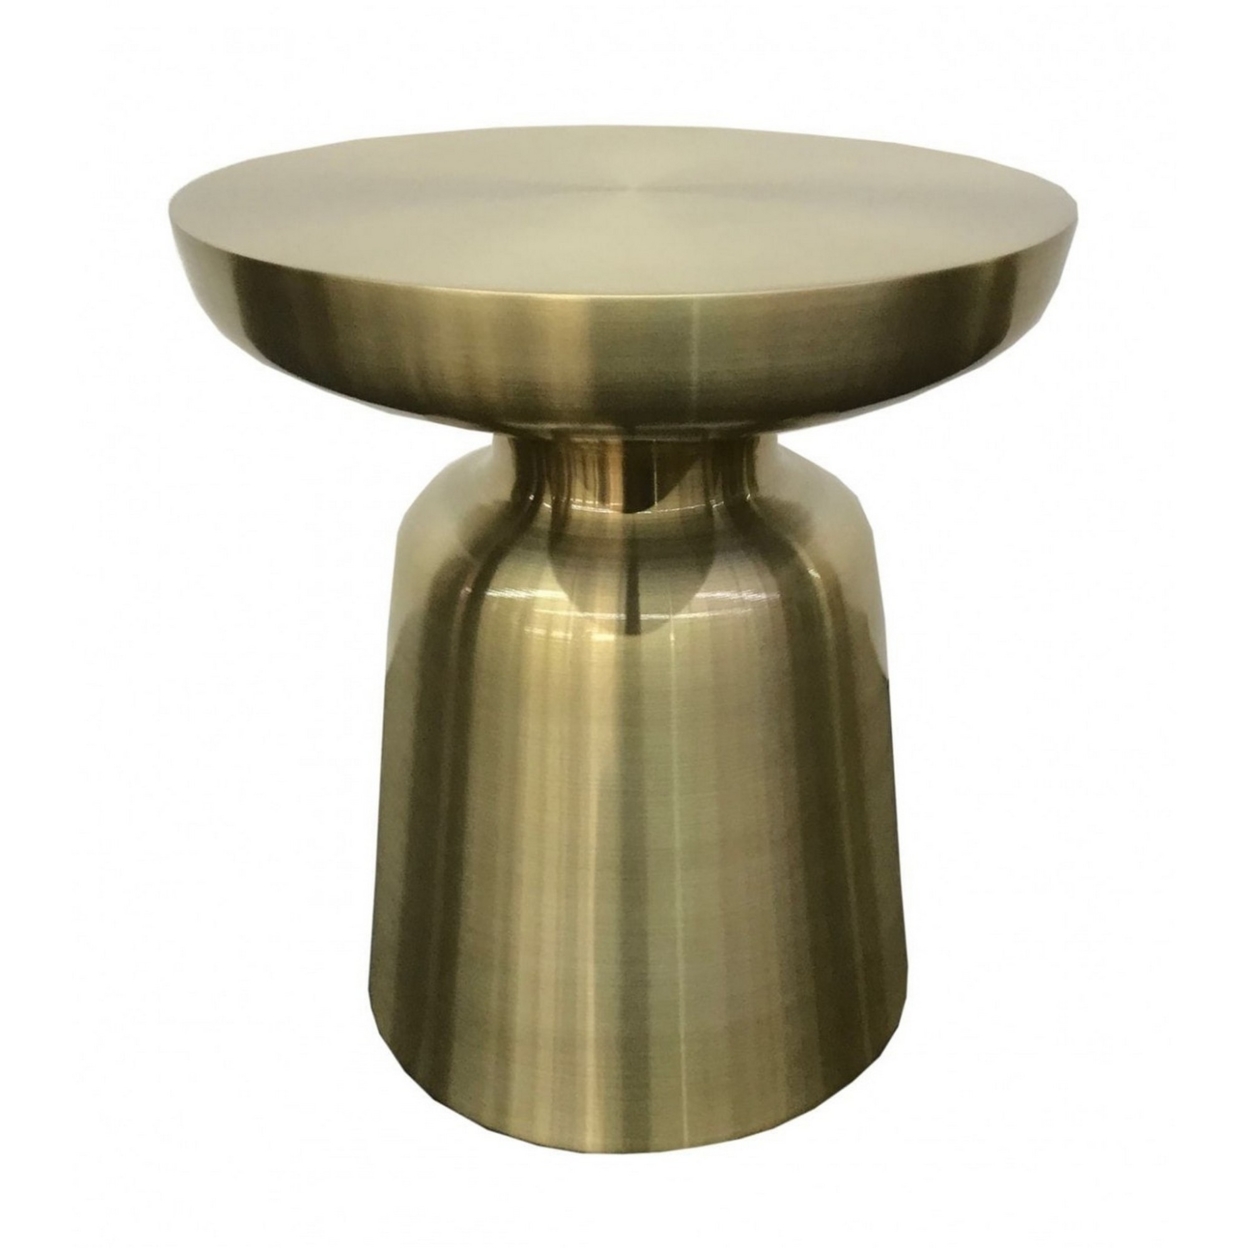 15 Inch Mushroom Shaped Metal End Table, Gold- Saltoro Sherpi